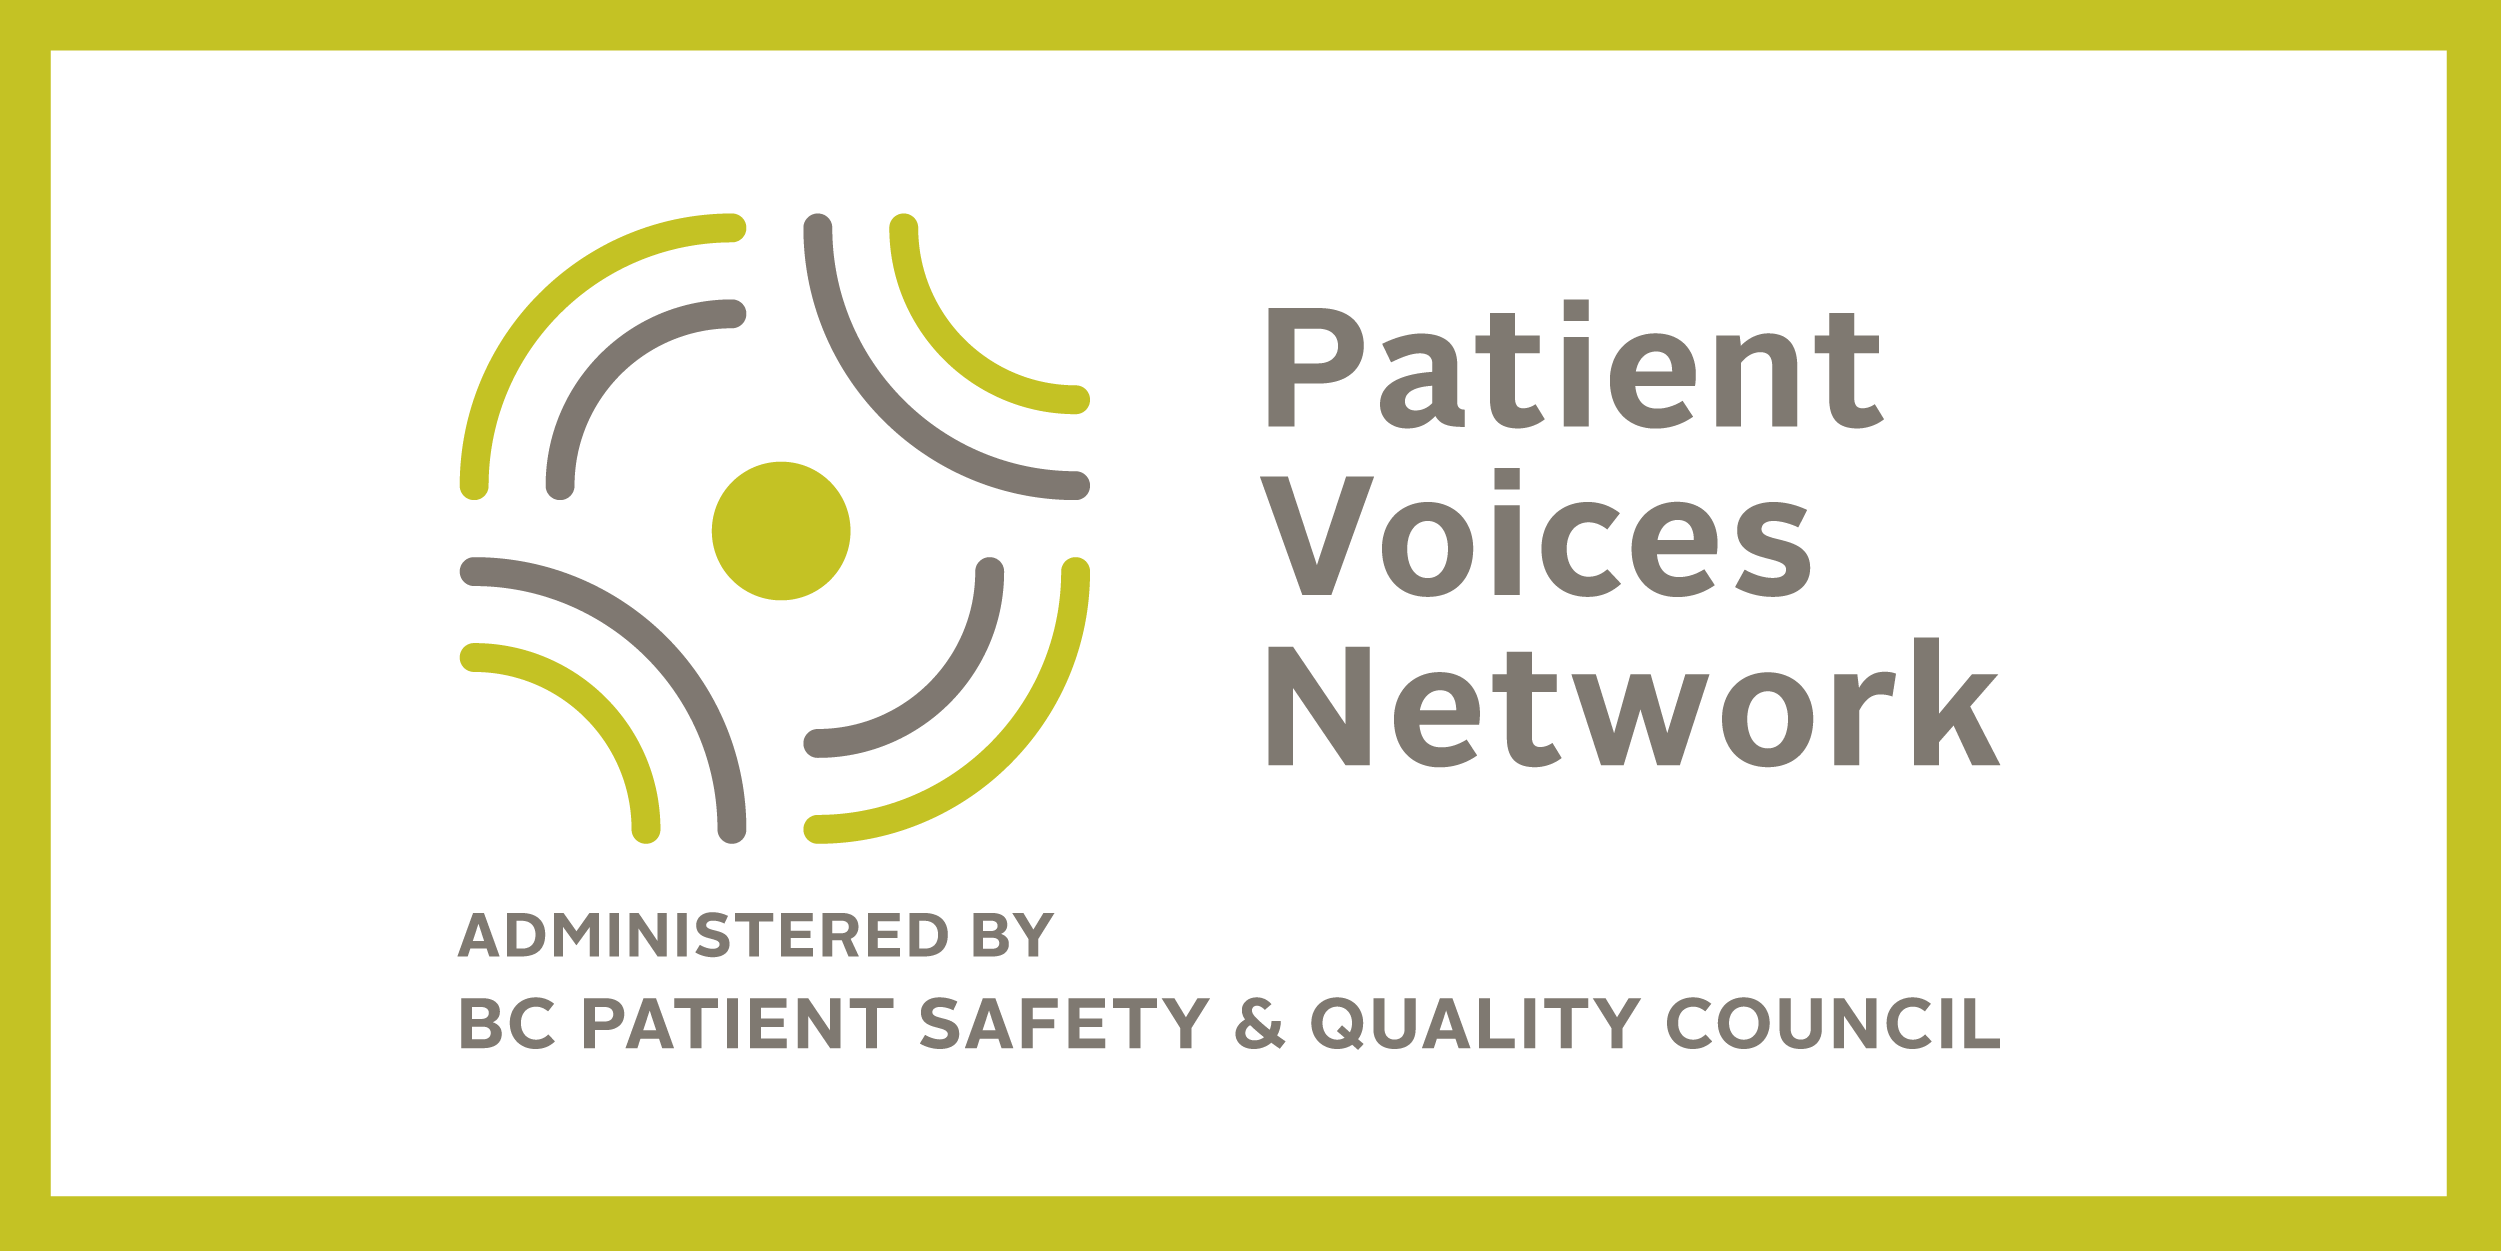 The Patient Voices Network logo.